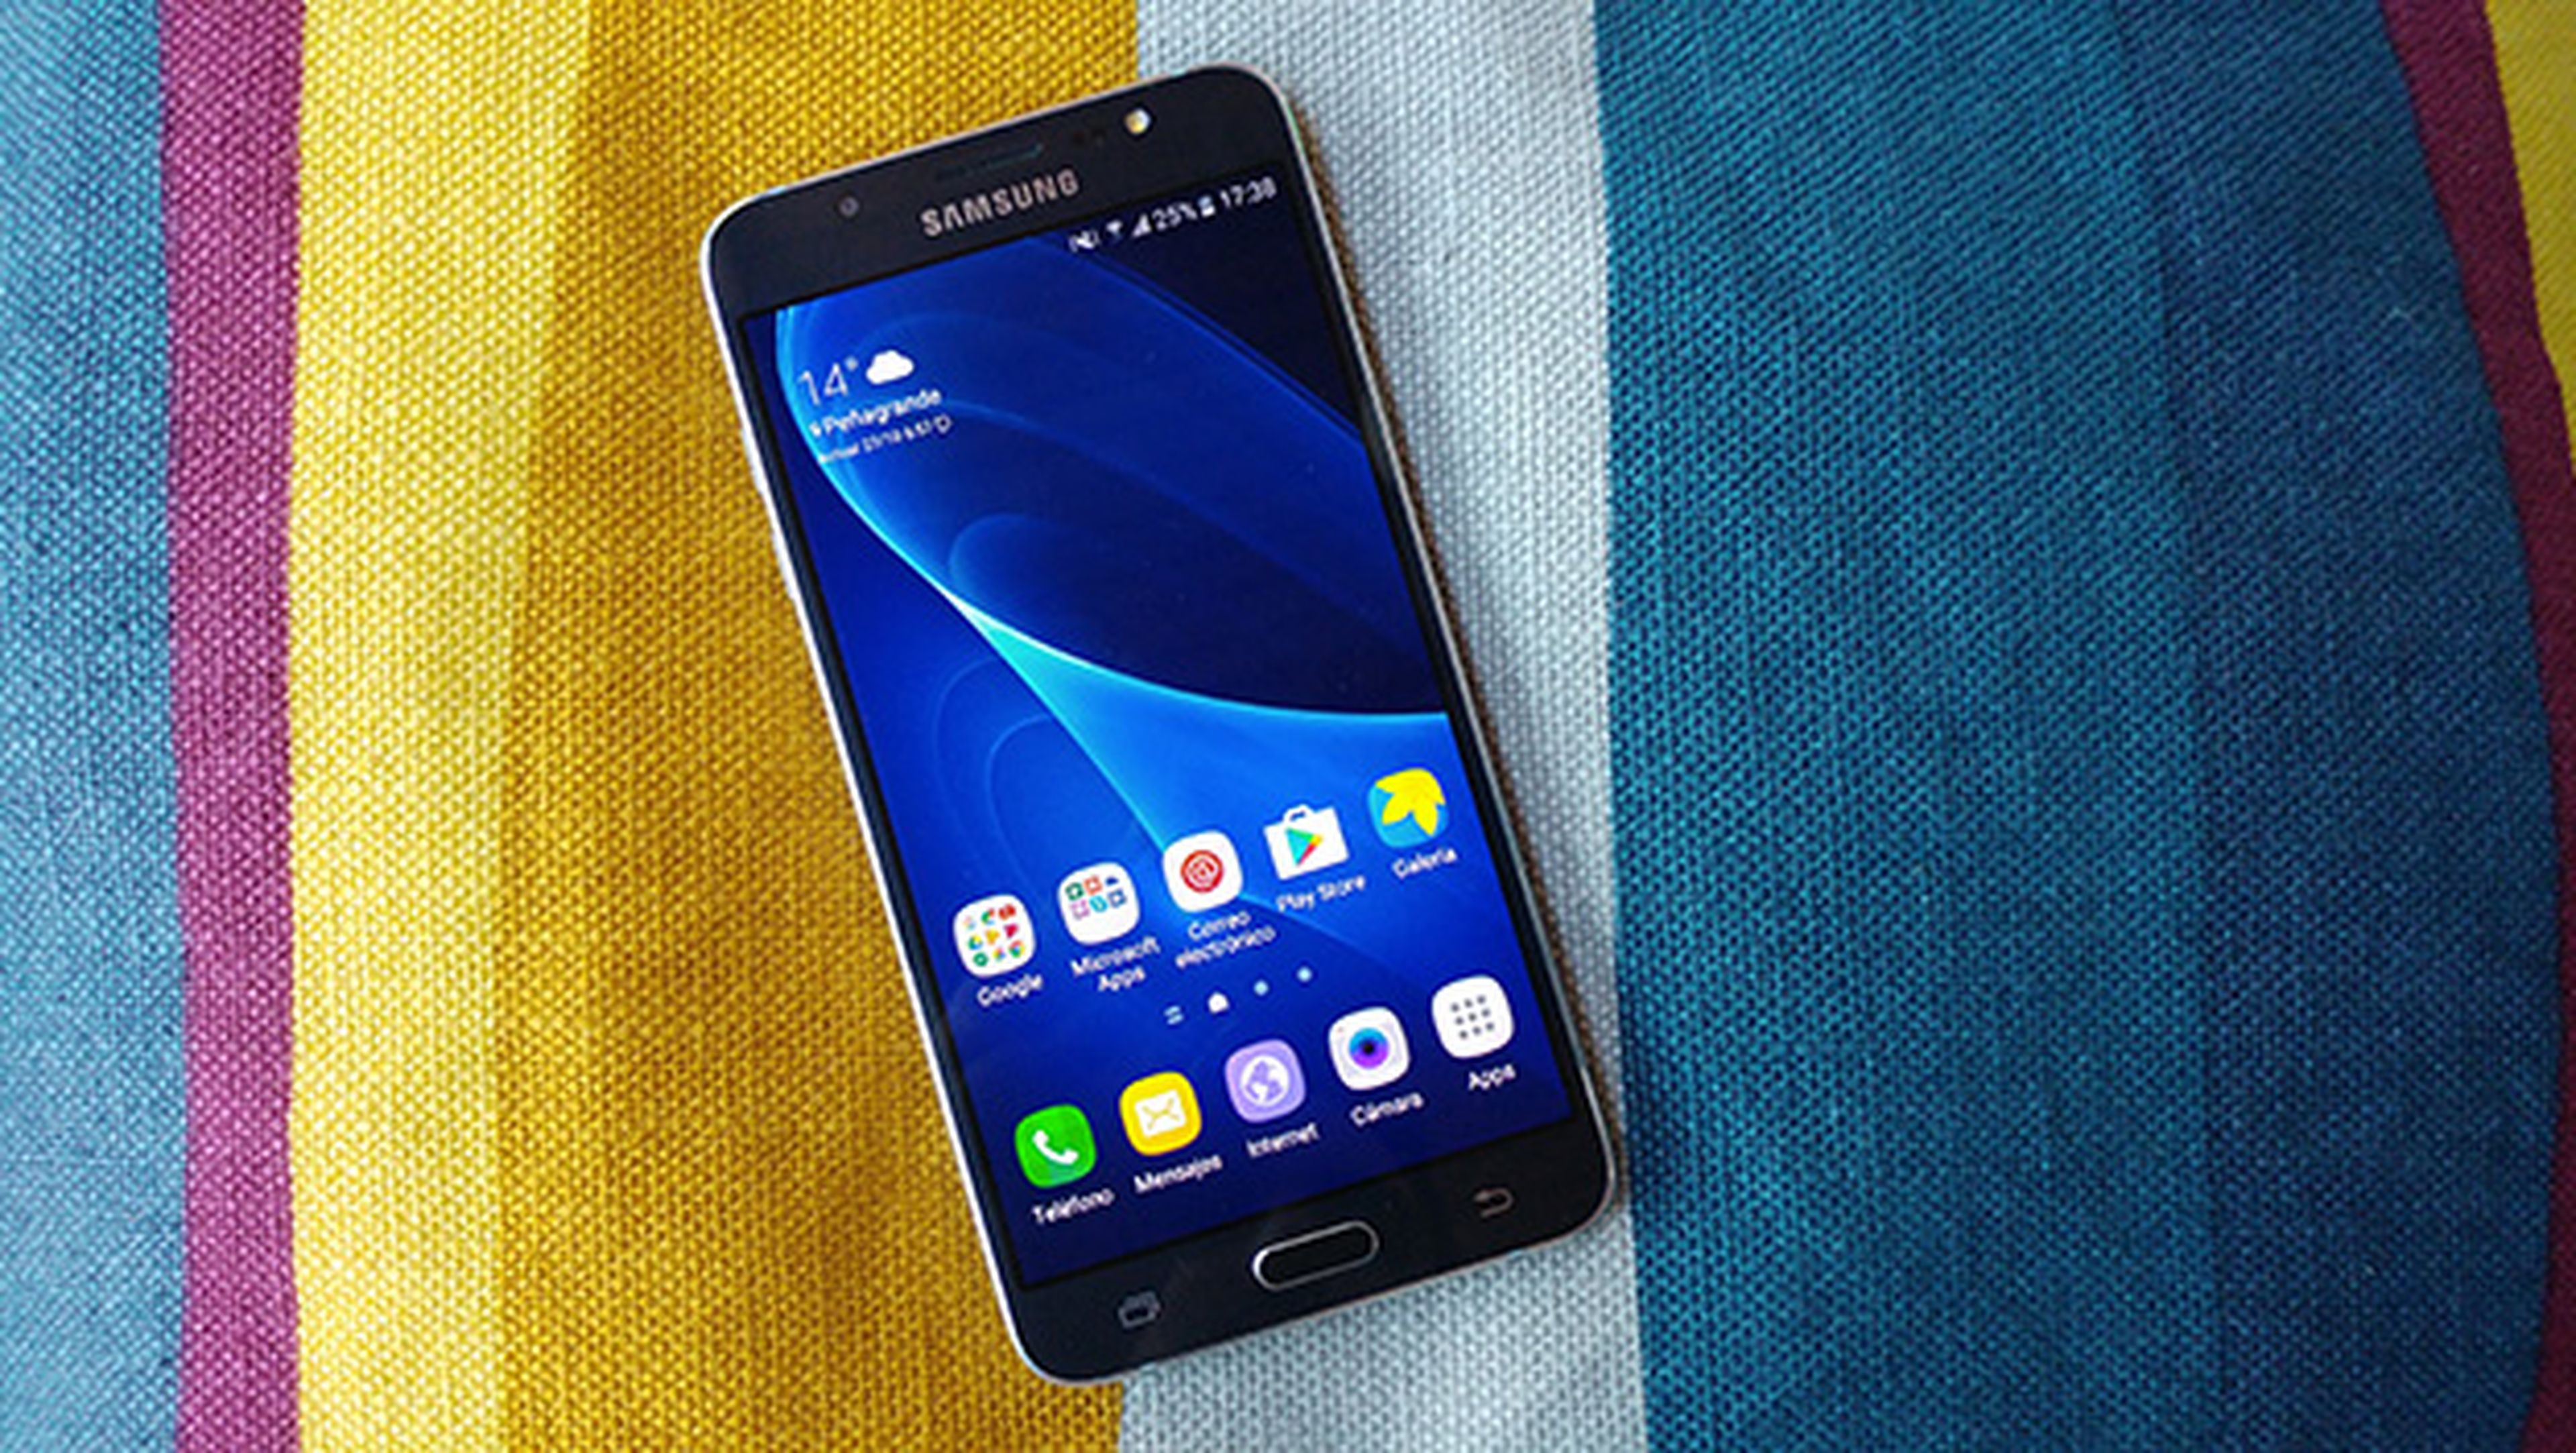 Cabra Chelín Ladrillo Samsung Galaxy J7 (2016), todas las ofertas del Black Friday | Computer Hoy